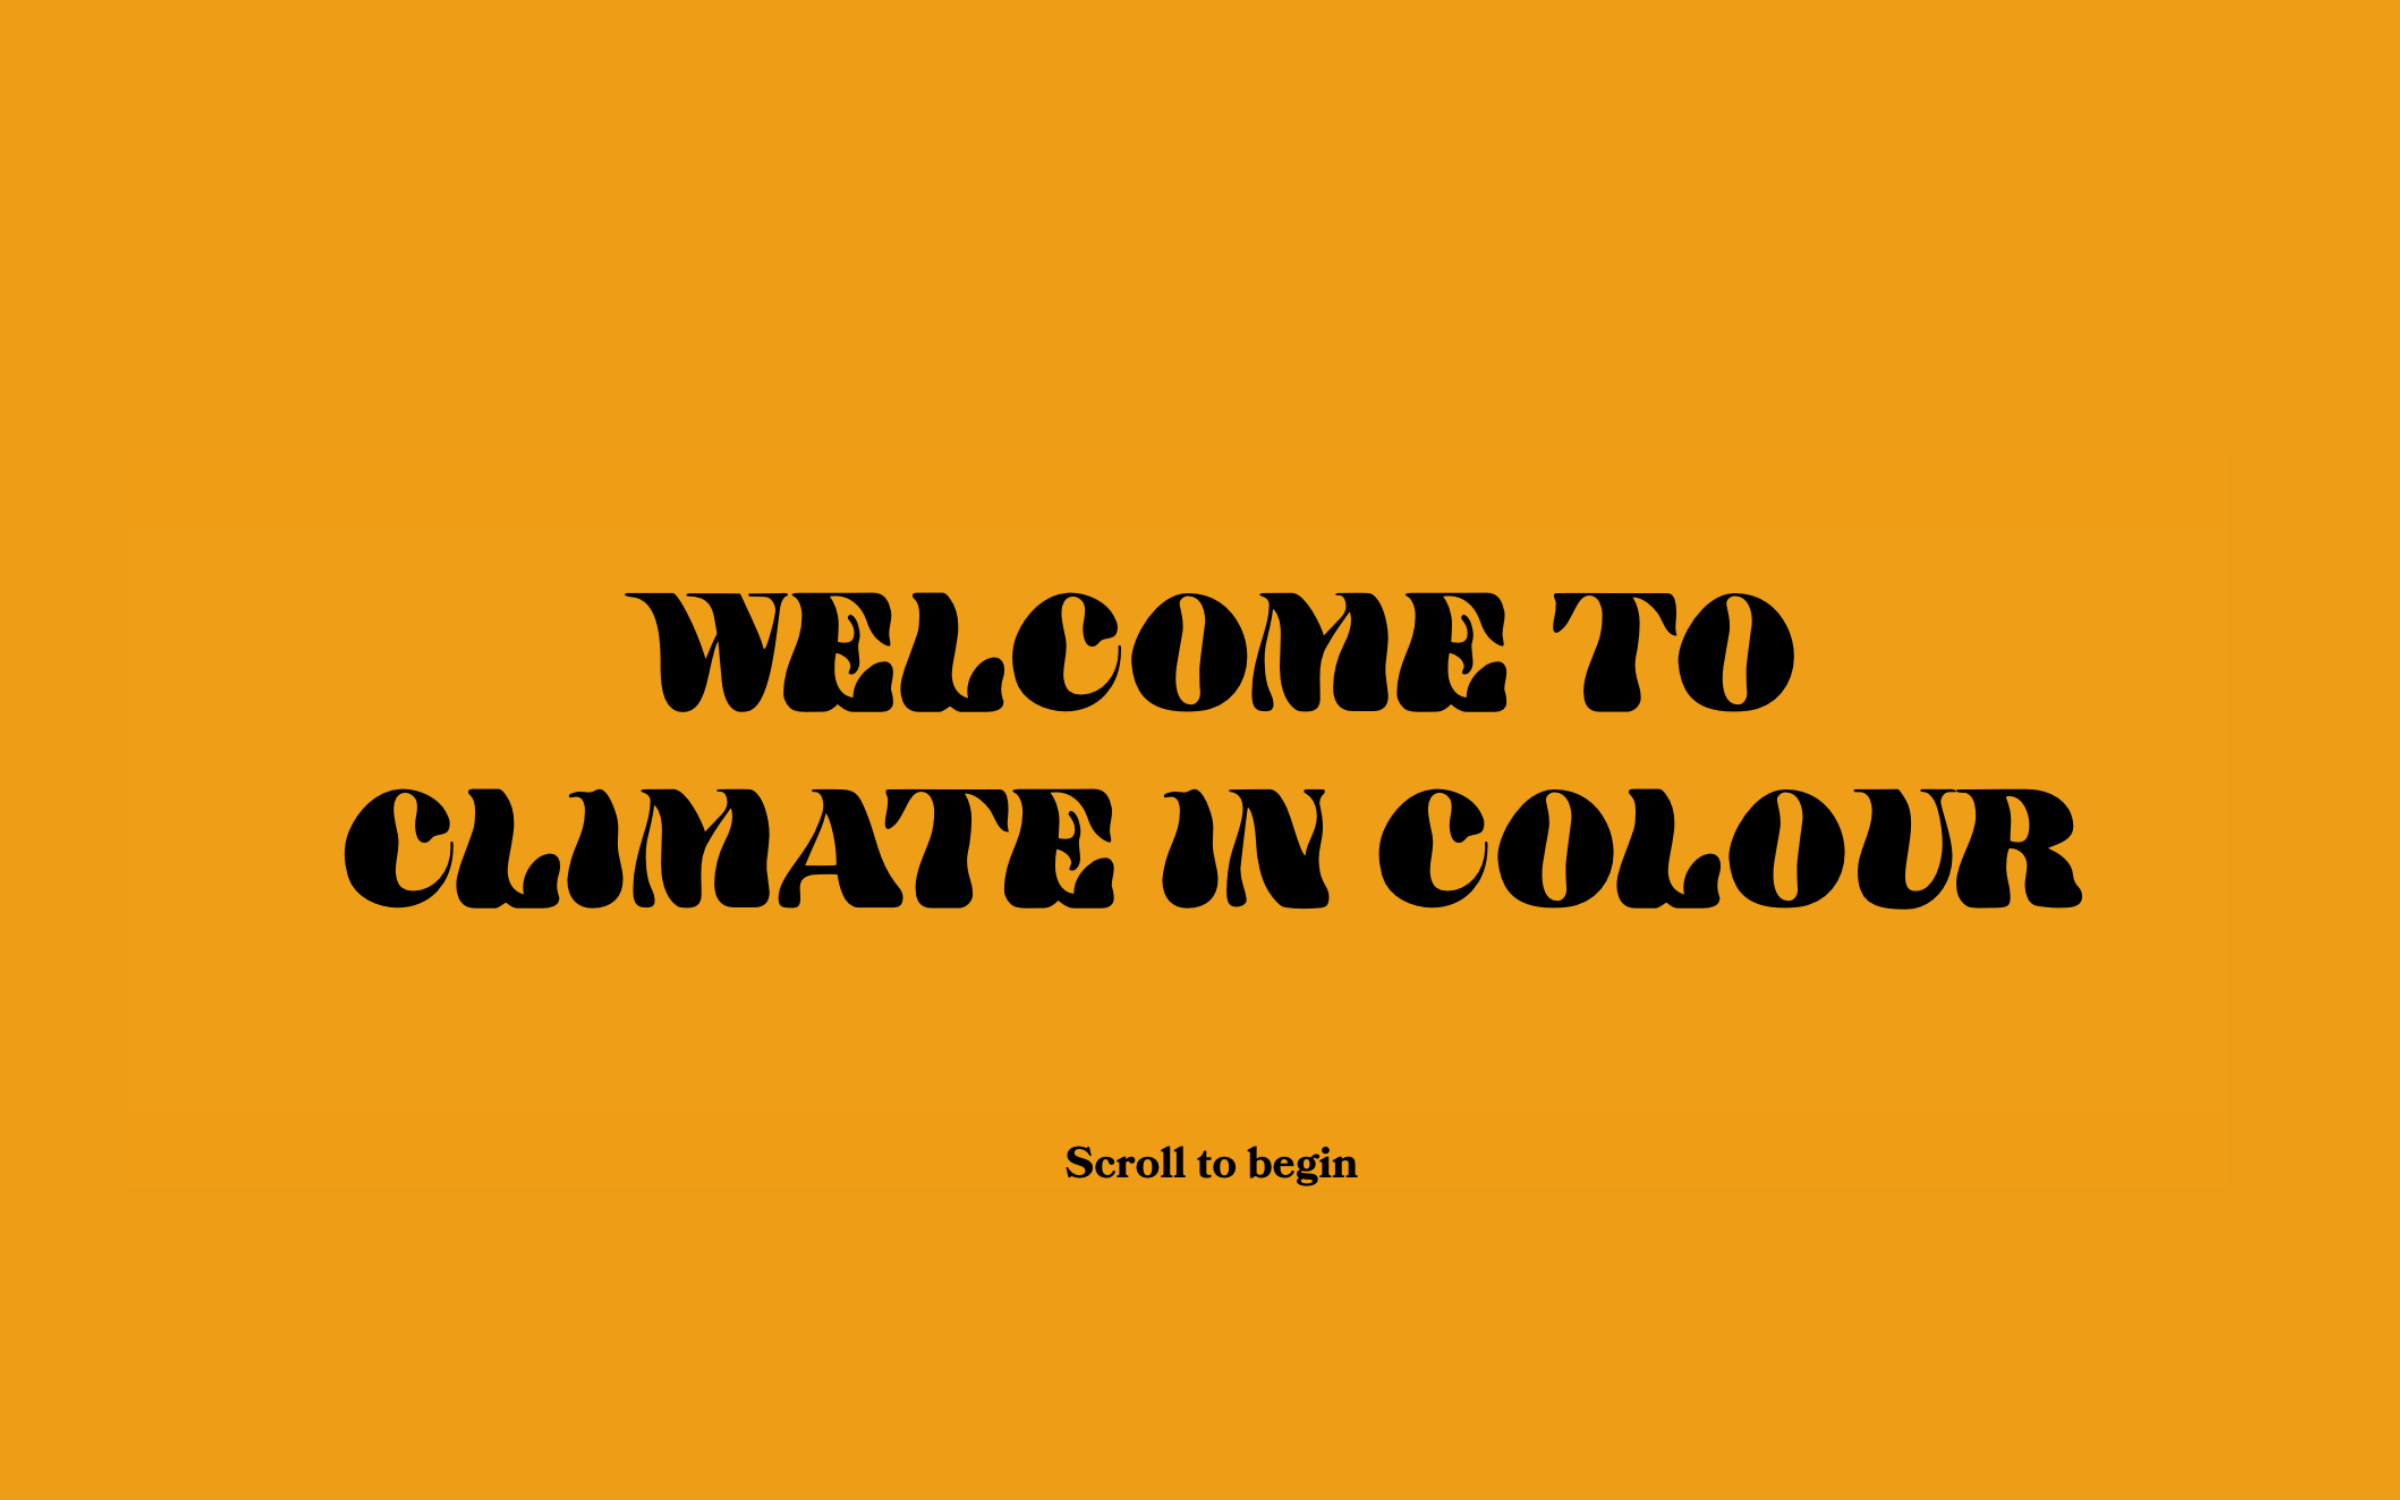 Climate In Colour, la plataforma para afrontar la crisis climática desde la justicia social